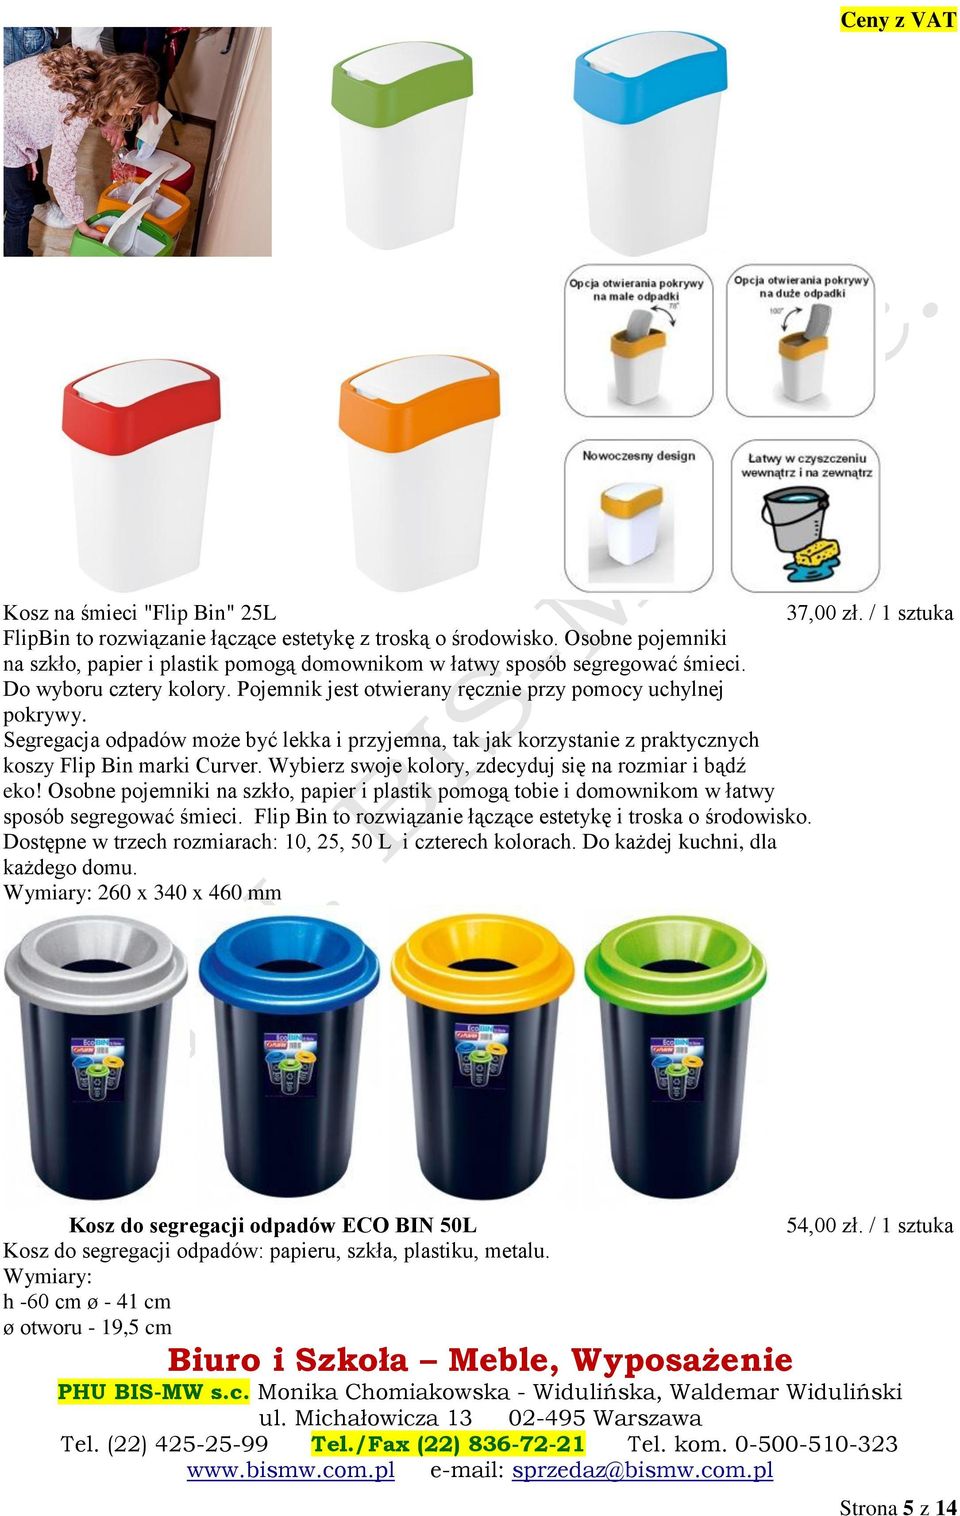 Segregacja odpadów może być lekka i przyjemna, tak jak korzystanie z praktycznych koszy Flip Bin marki Curver. Wybierz swoje kolory, zdecyduj się na rozmiar i bądź eko!